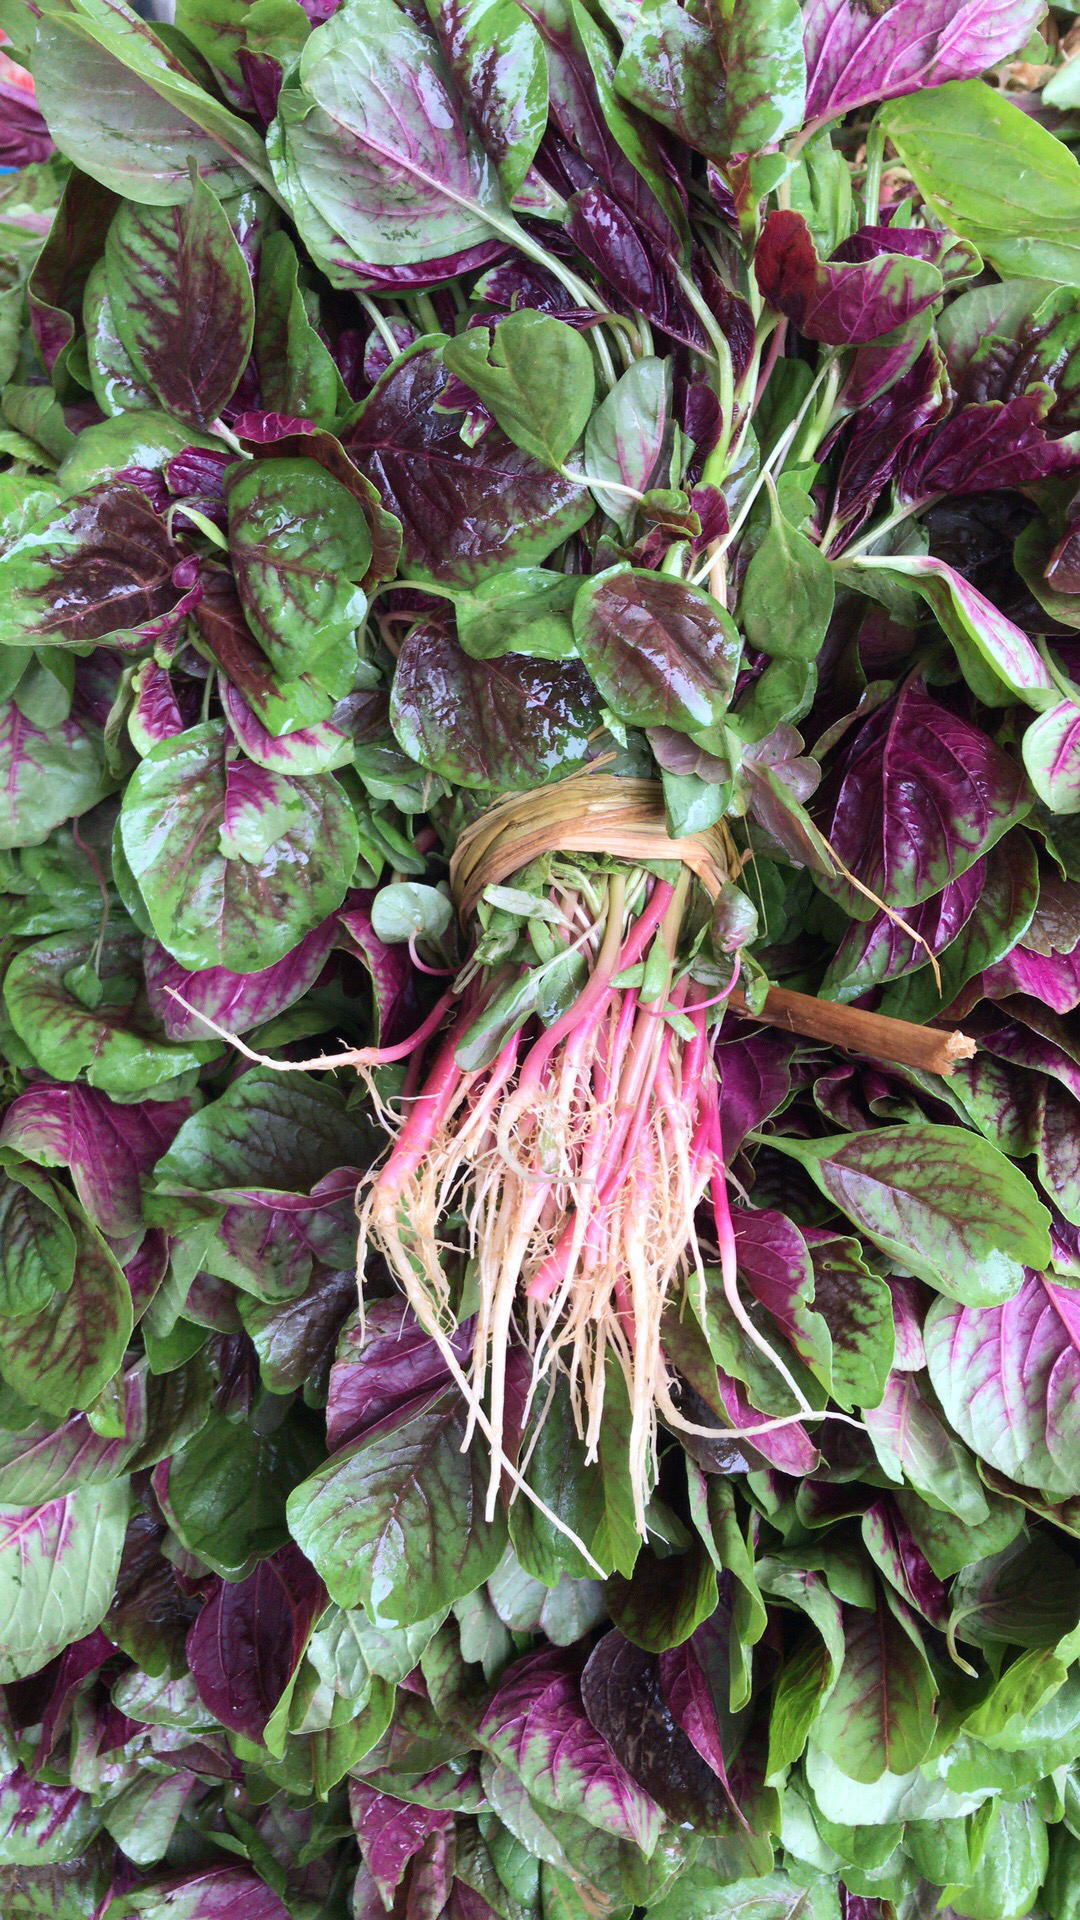 改良红苋菜品种!既耐热又耐寒,耐湿,种植简单易打理